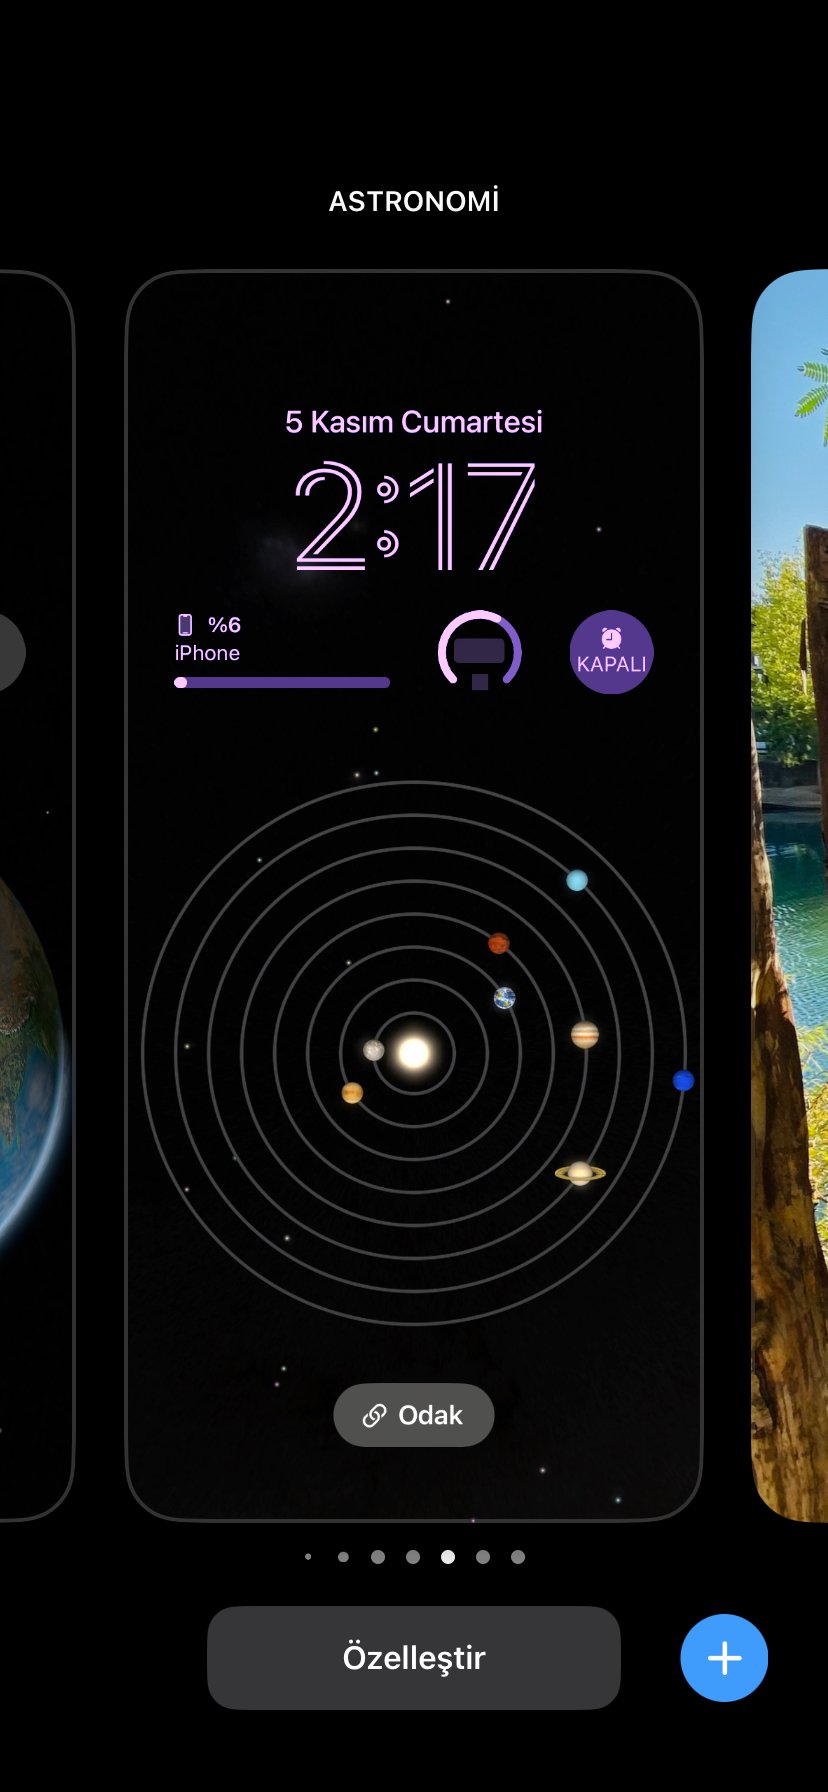 Iphone Kilit Ekranini Gunclelleme Techtalkturkey - Teknoloji İncelemeleri July